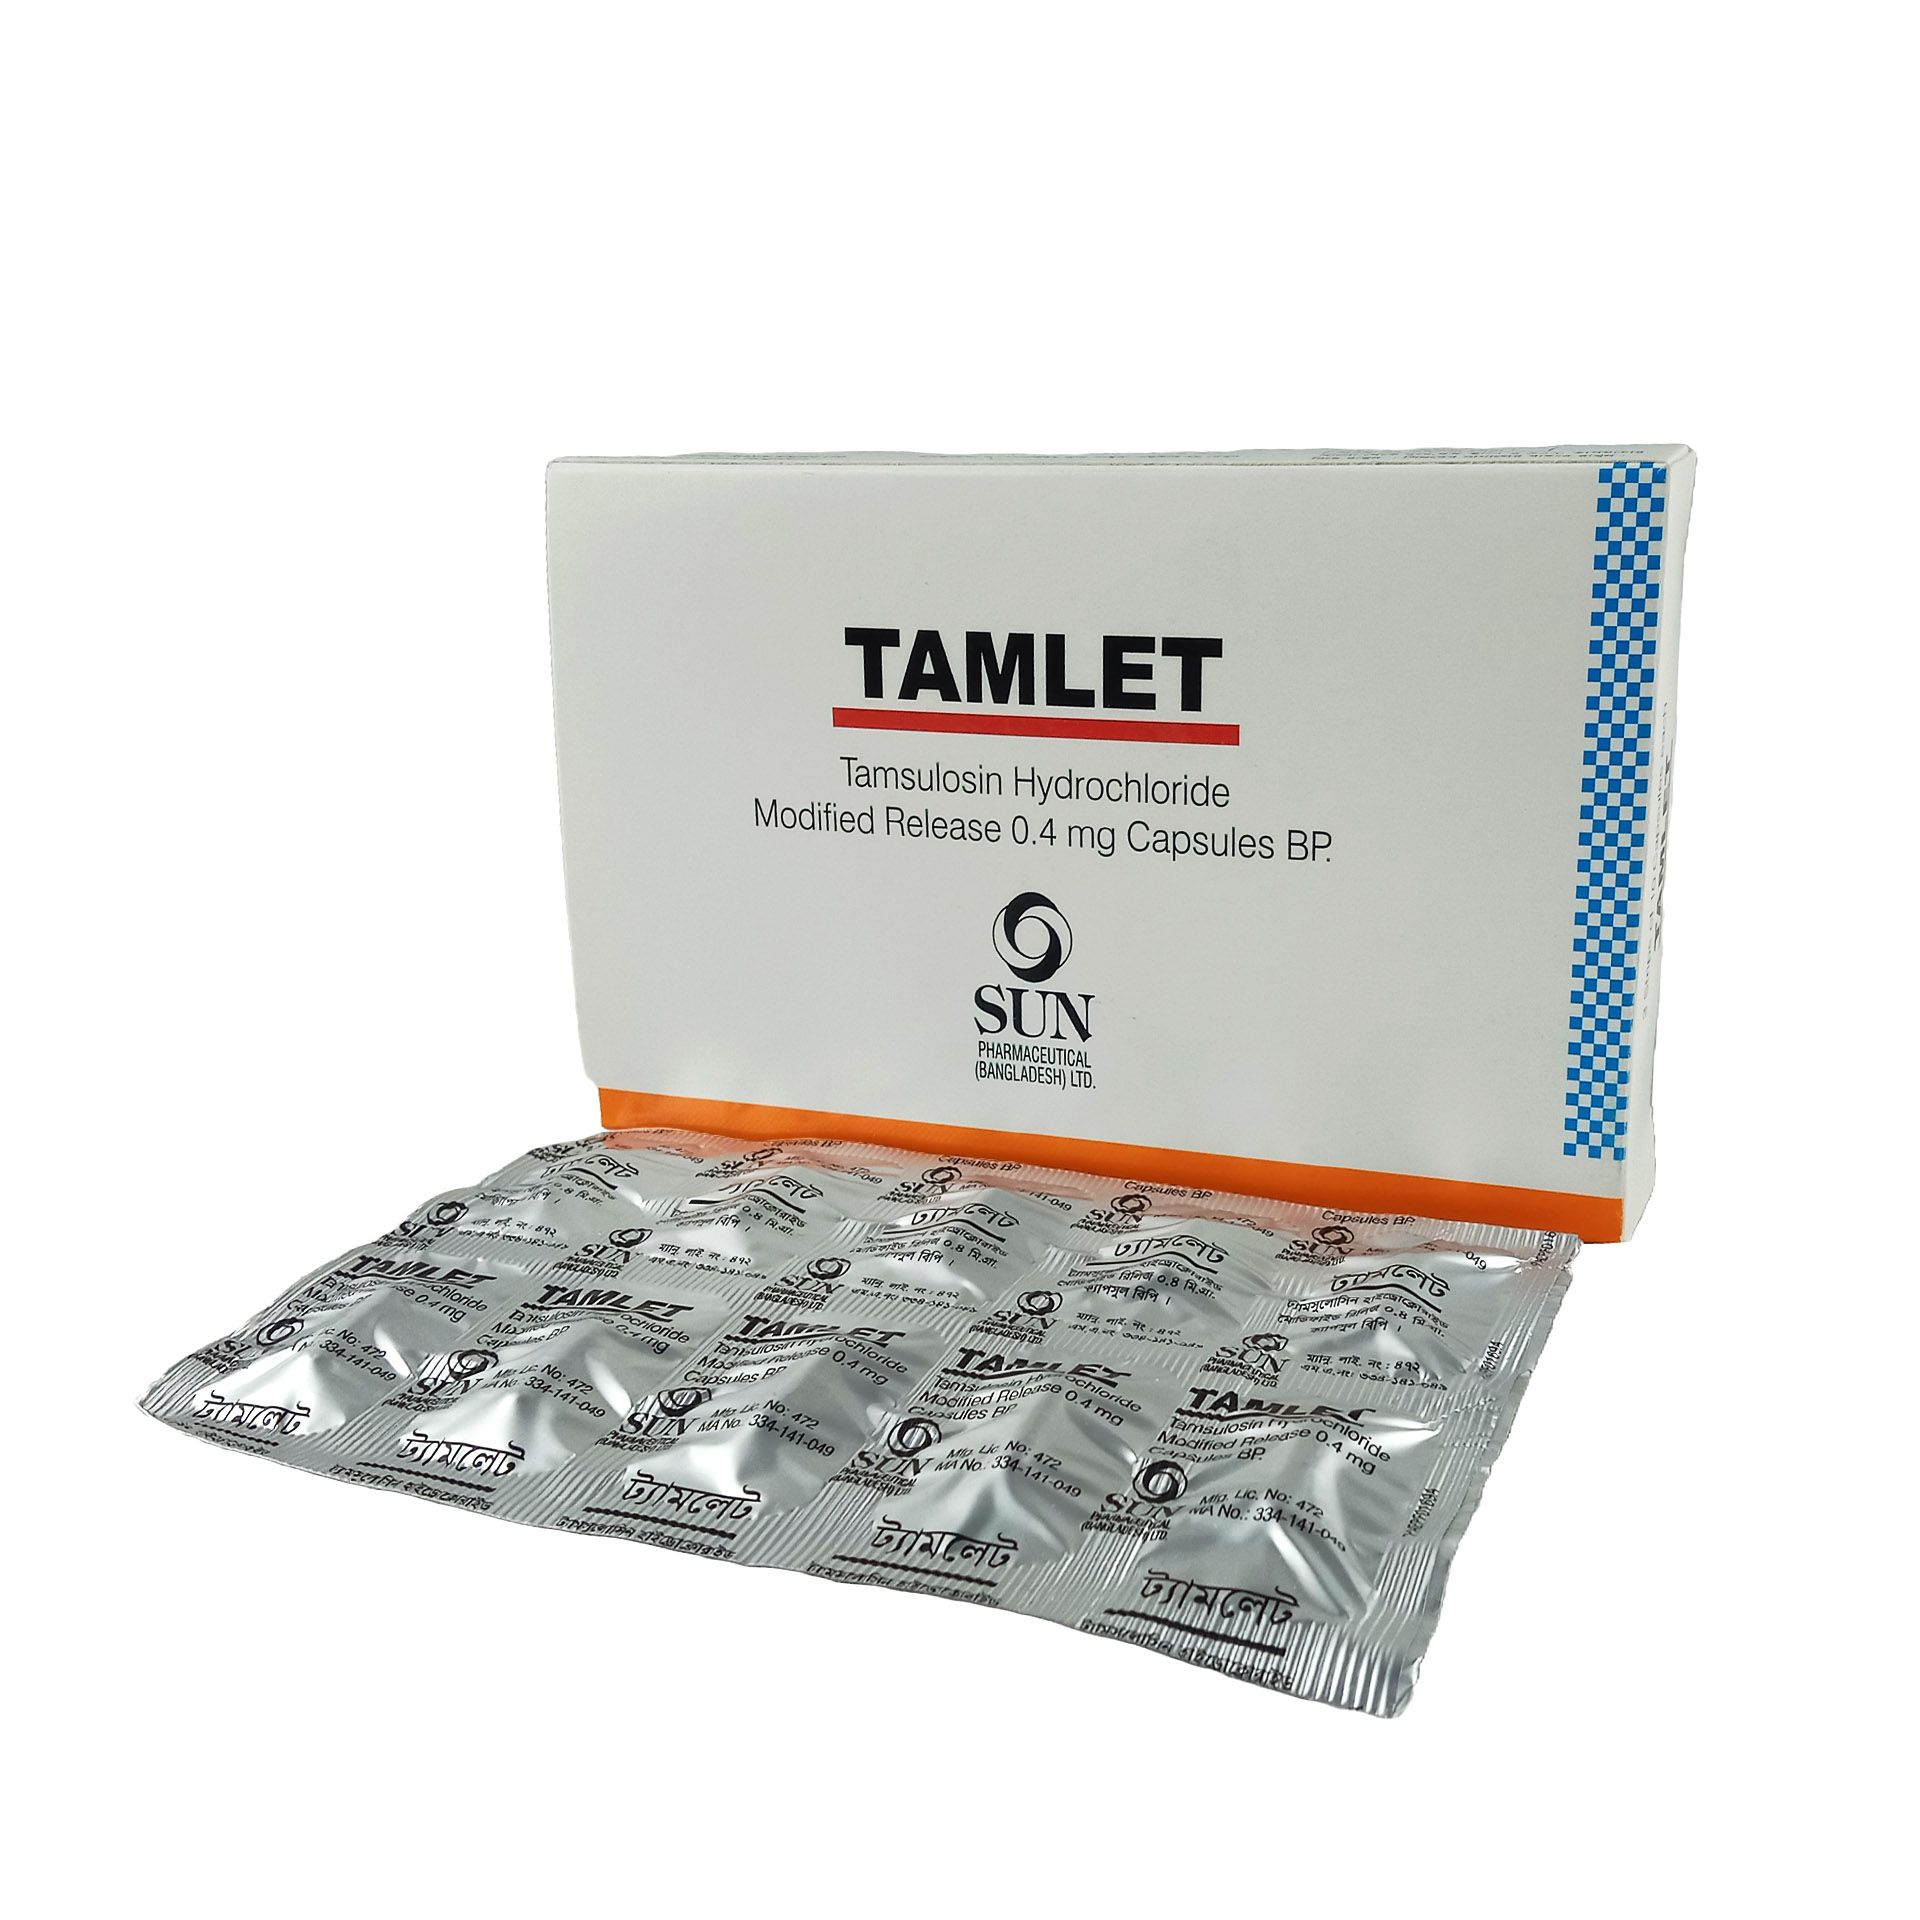 Tamlet 0.4 0.4mg Capsule